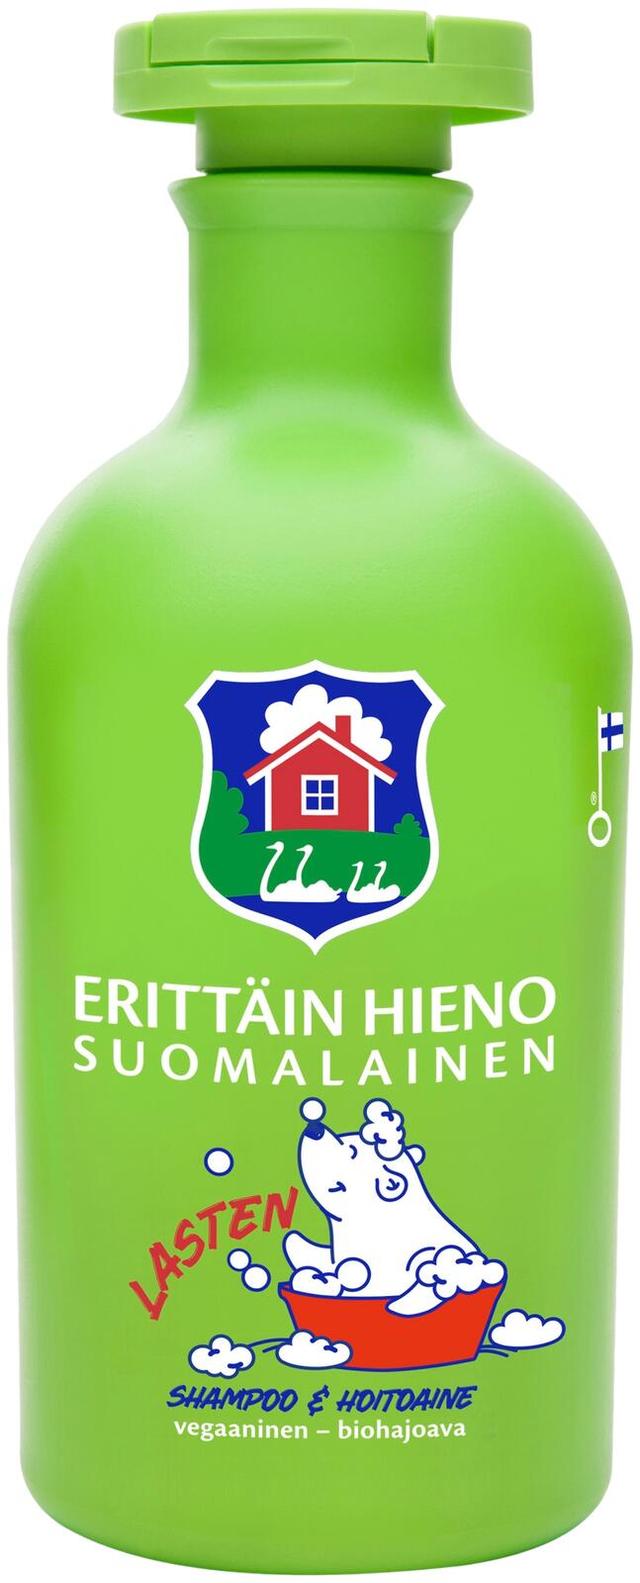 Erittäin Hieno Suomalainen Lasten shampoo & hoitoaine 300ml